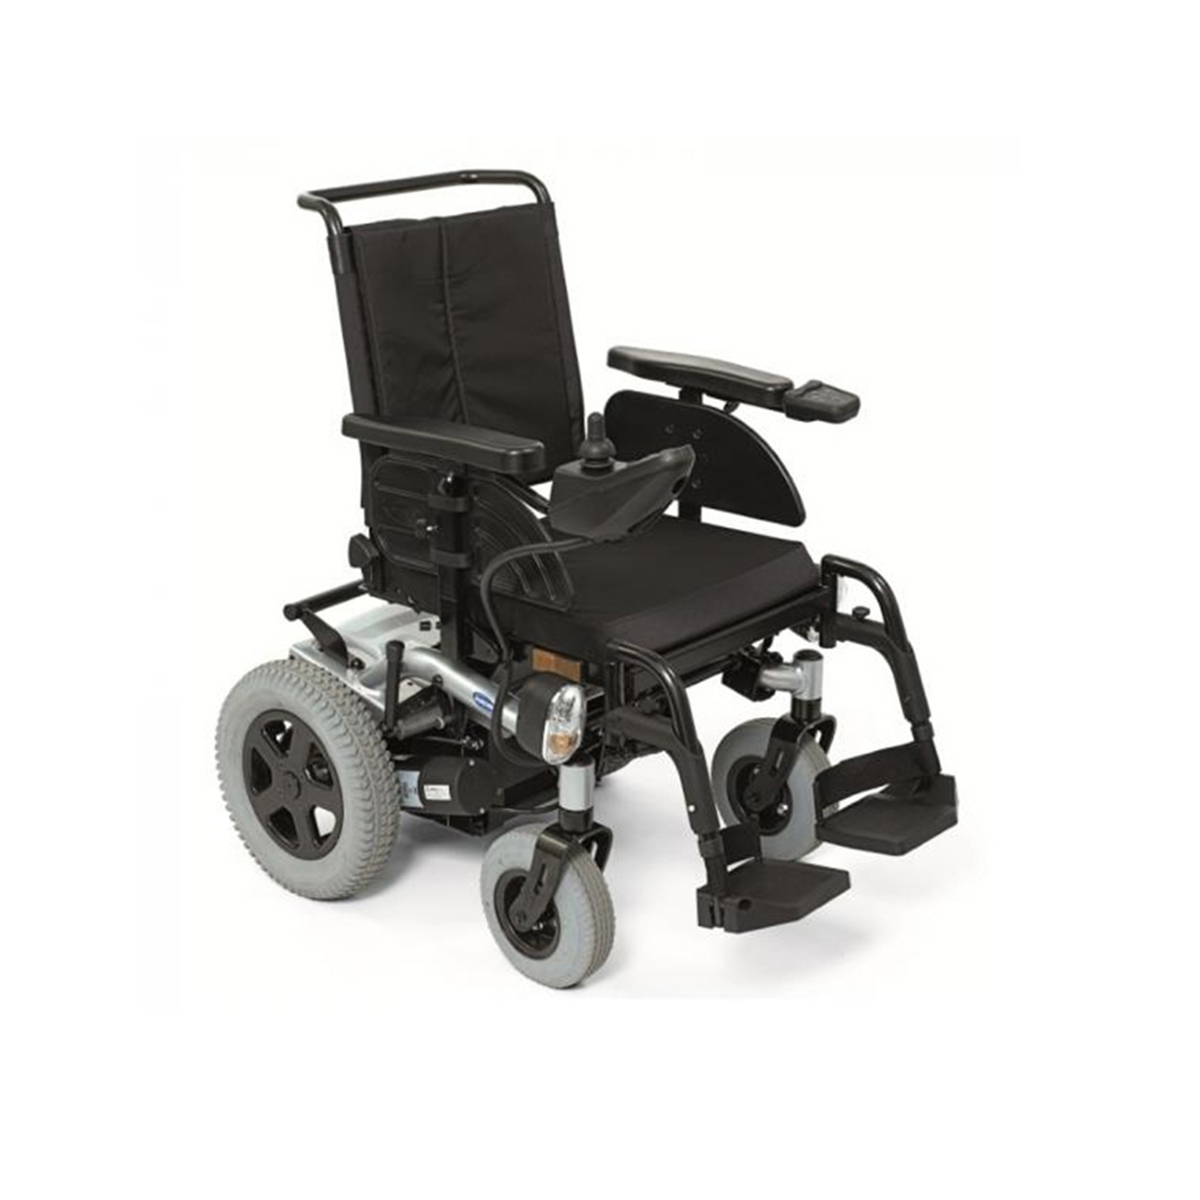 Коляски инвалидные с приводом цена. Invacare Stream инвалидная коляска. Инвалидная коляска с электроприводом Армед. Пульт управления для инвалидной электроколяски Инкар 11. Инвалидная коляска электро толкатель.